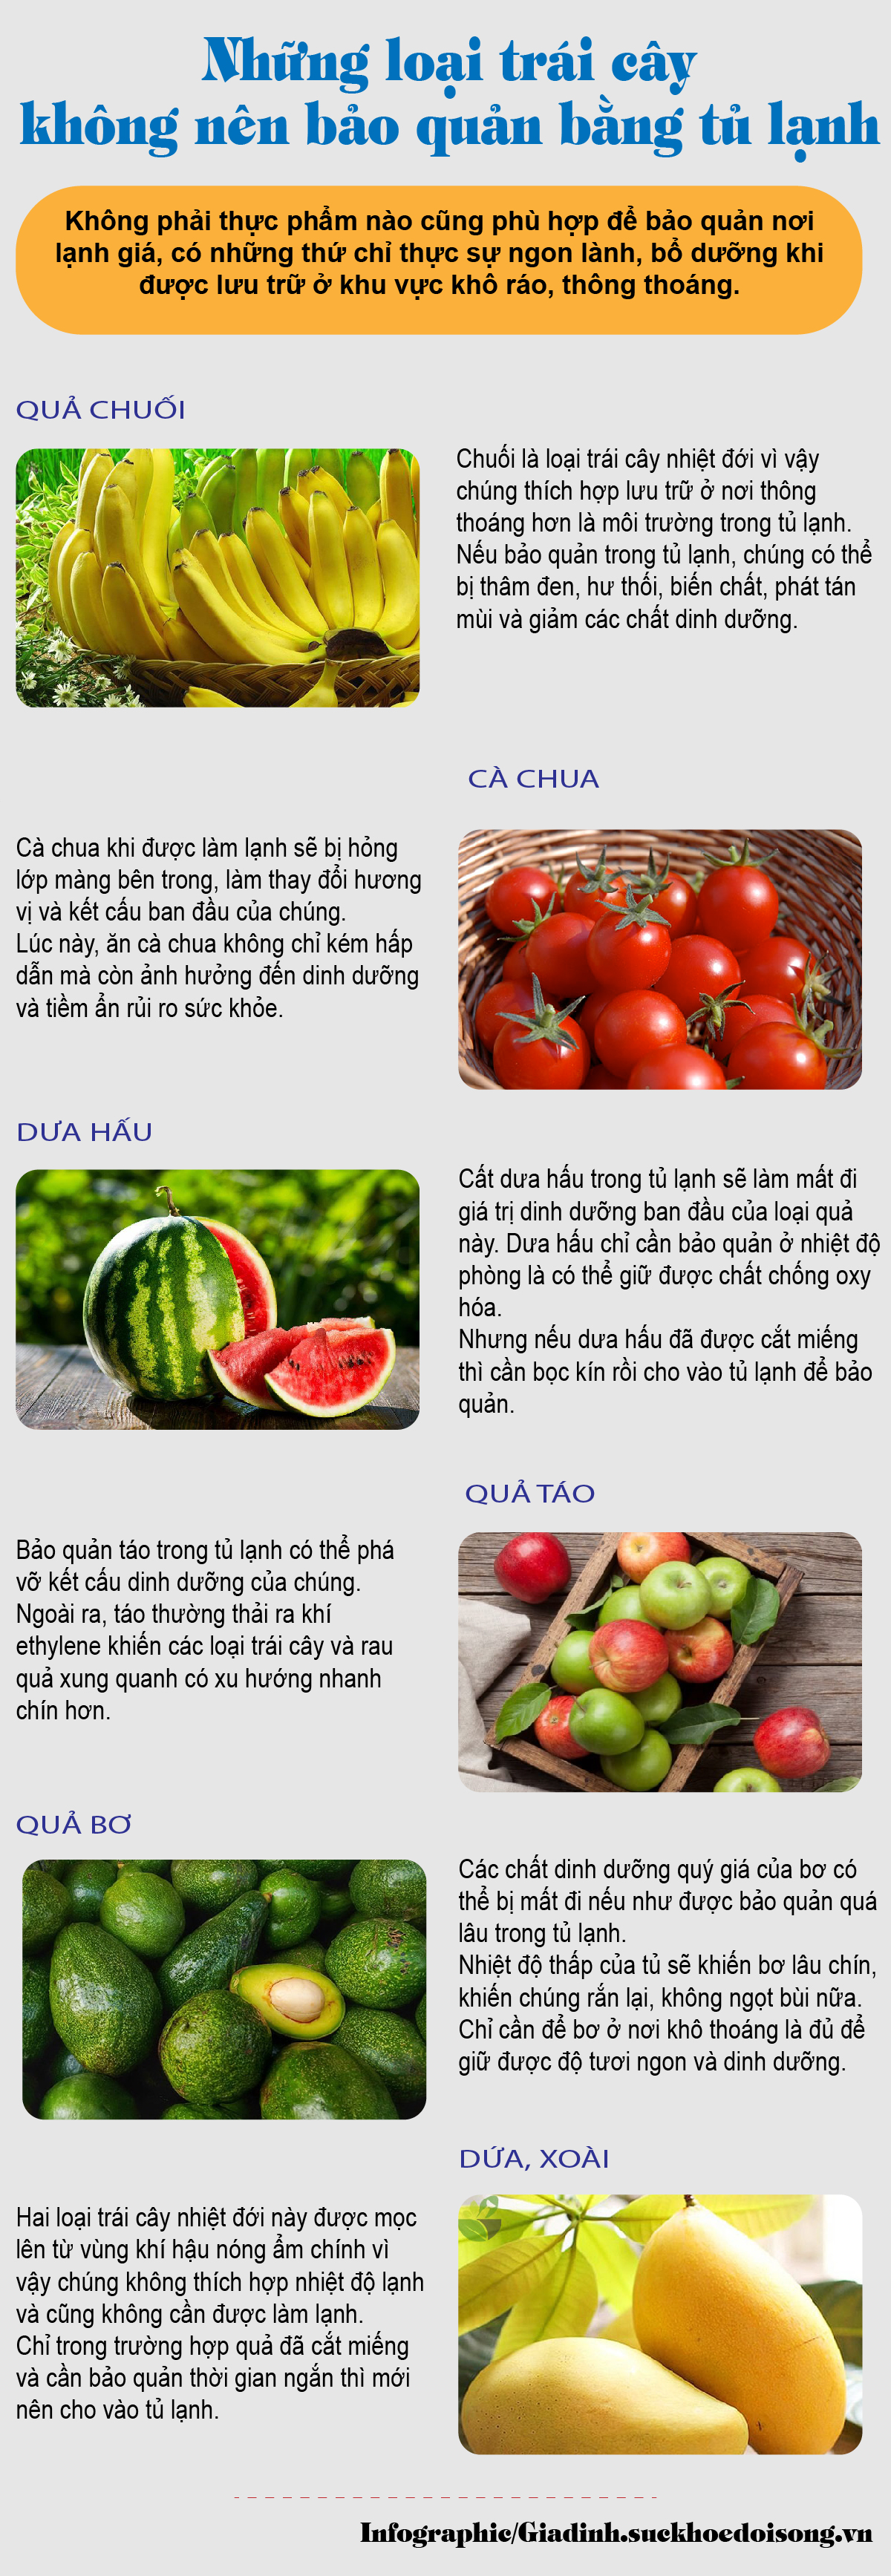 Những loại trái cây mùa hè không nên bảo quản trong tủ lạnh - Ảnh 1.